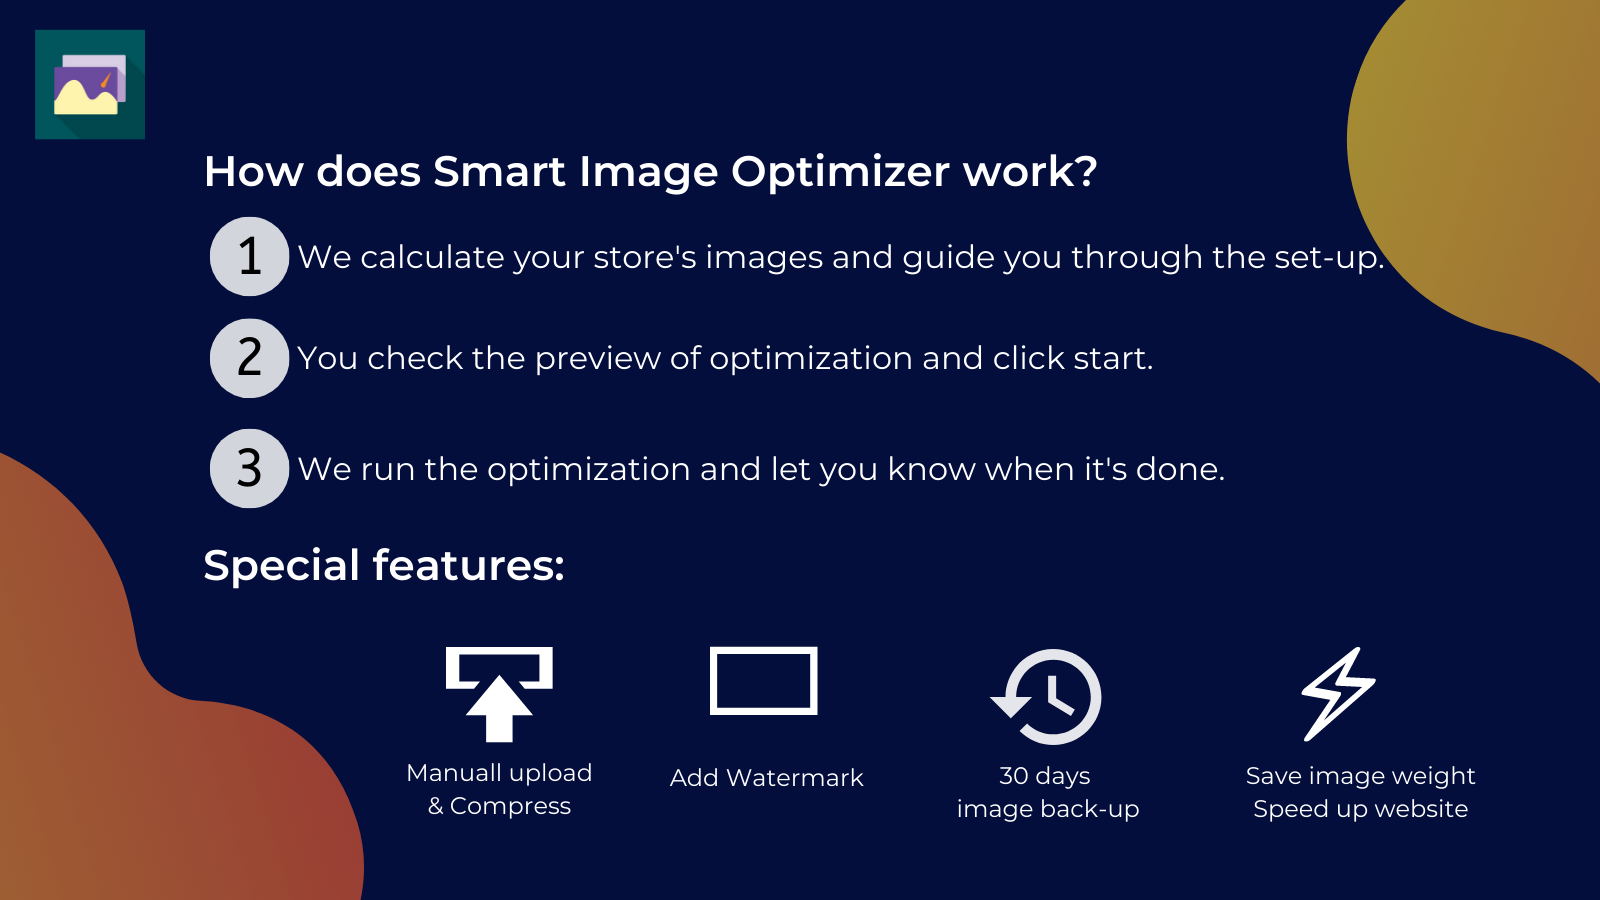 ¿Cómo funciona el optimizador inteligente de imágenes?